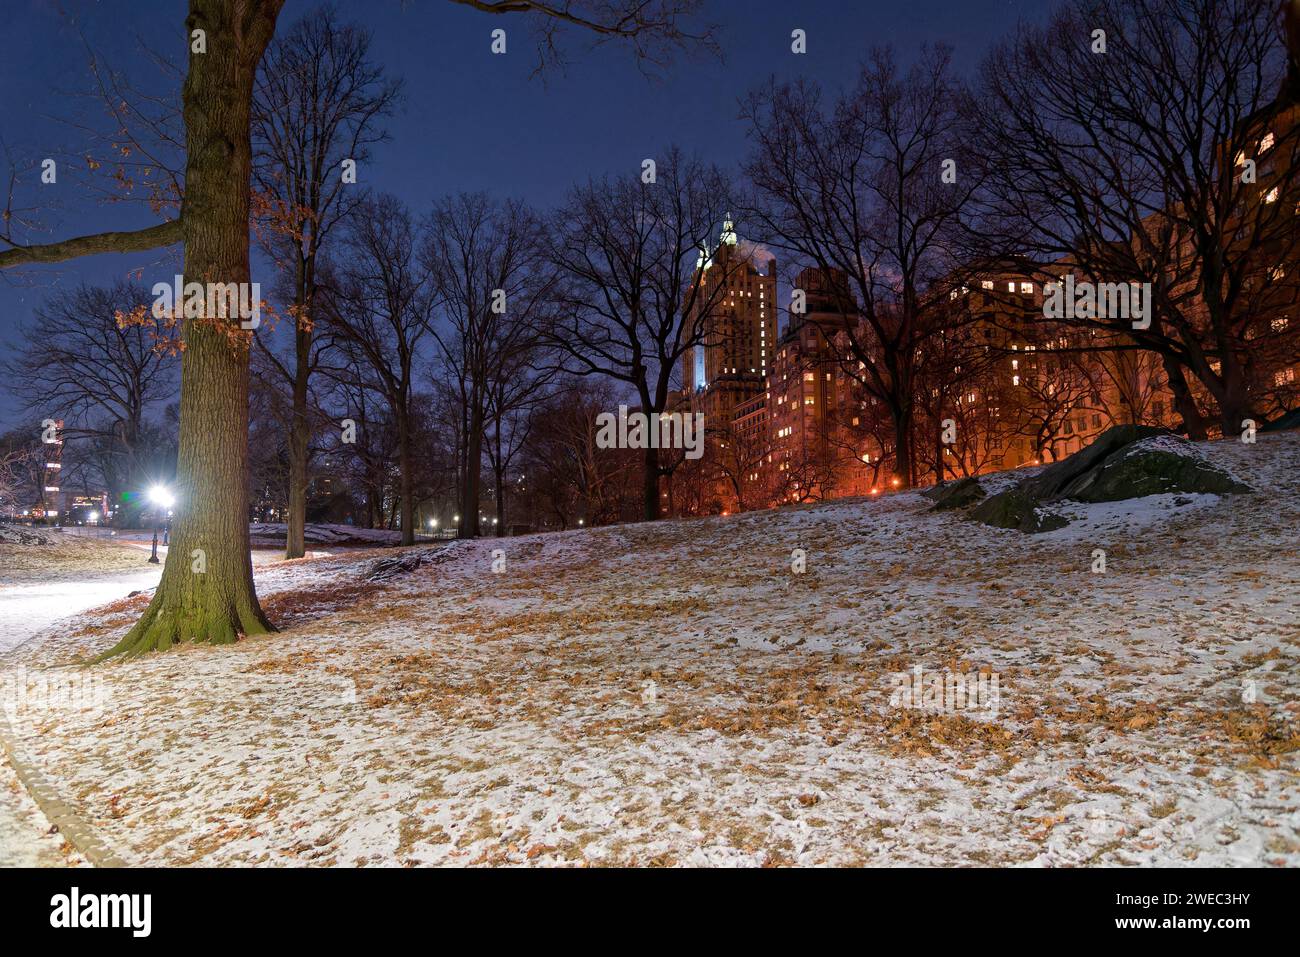 Central Park, Manhatttan New York, Sous la neige au mois de décembre avec des promeneurs et des sportifs Stockfoto